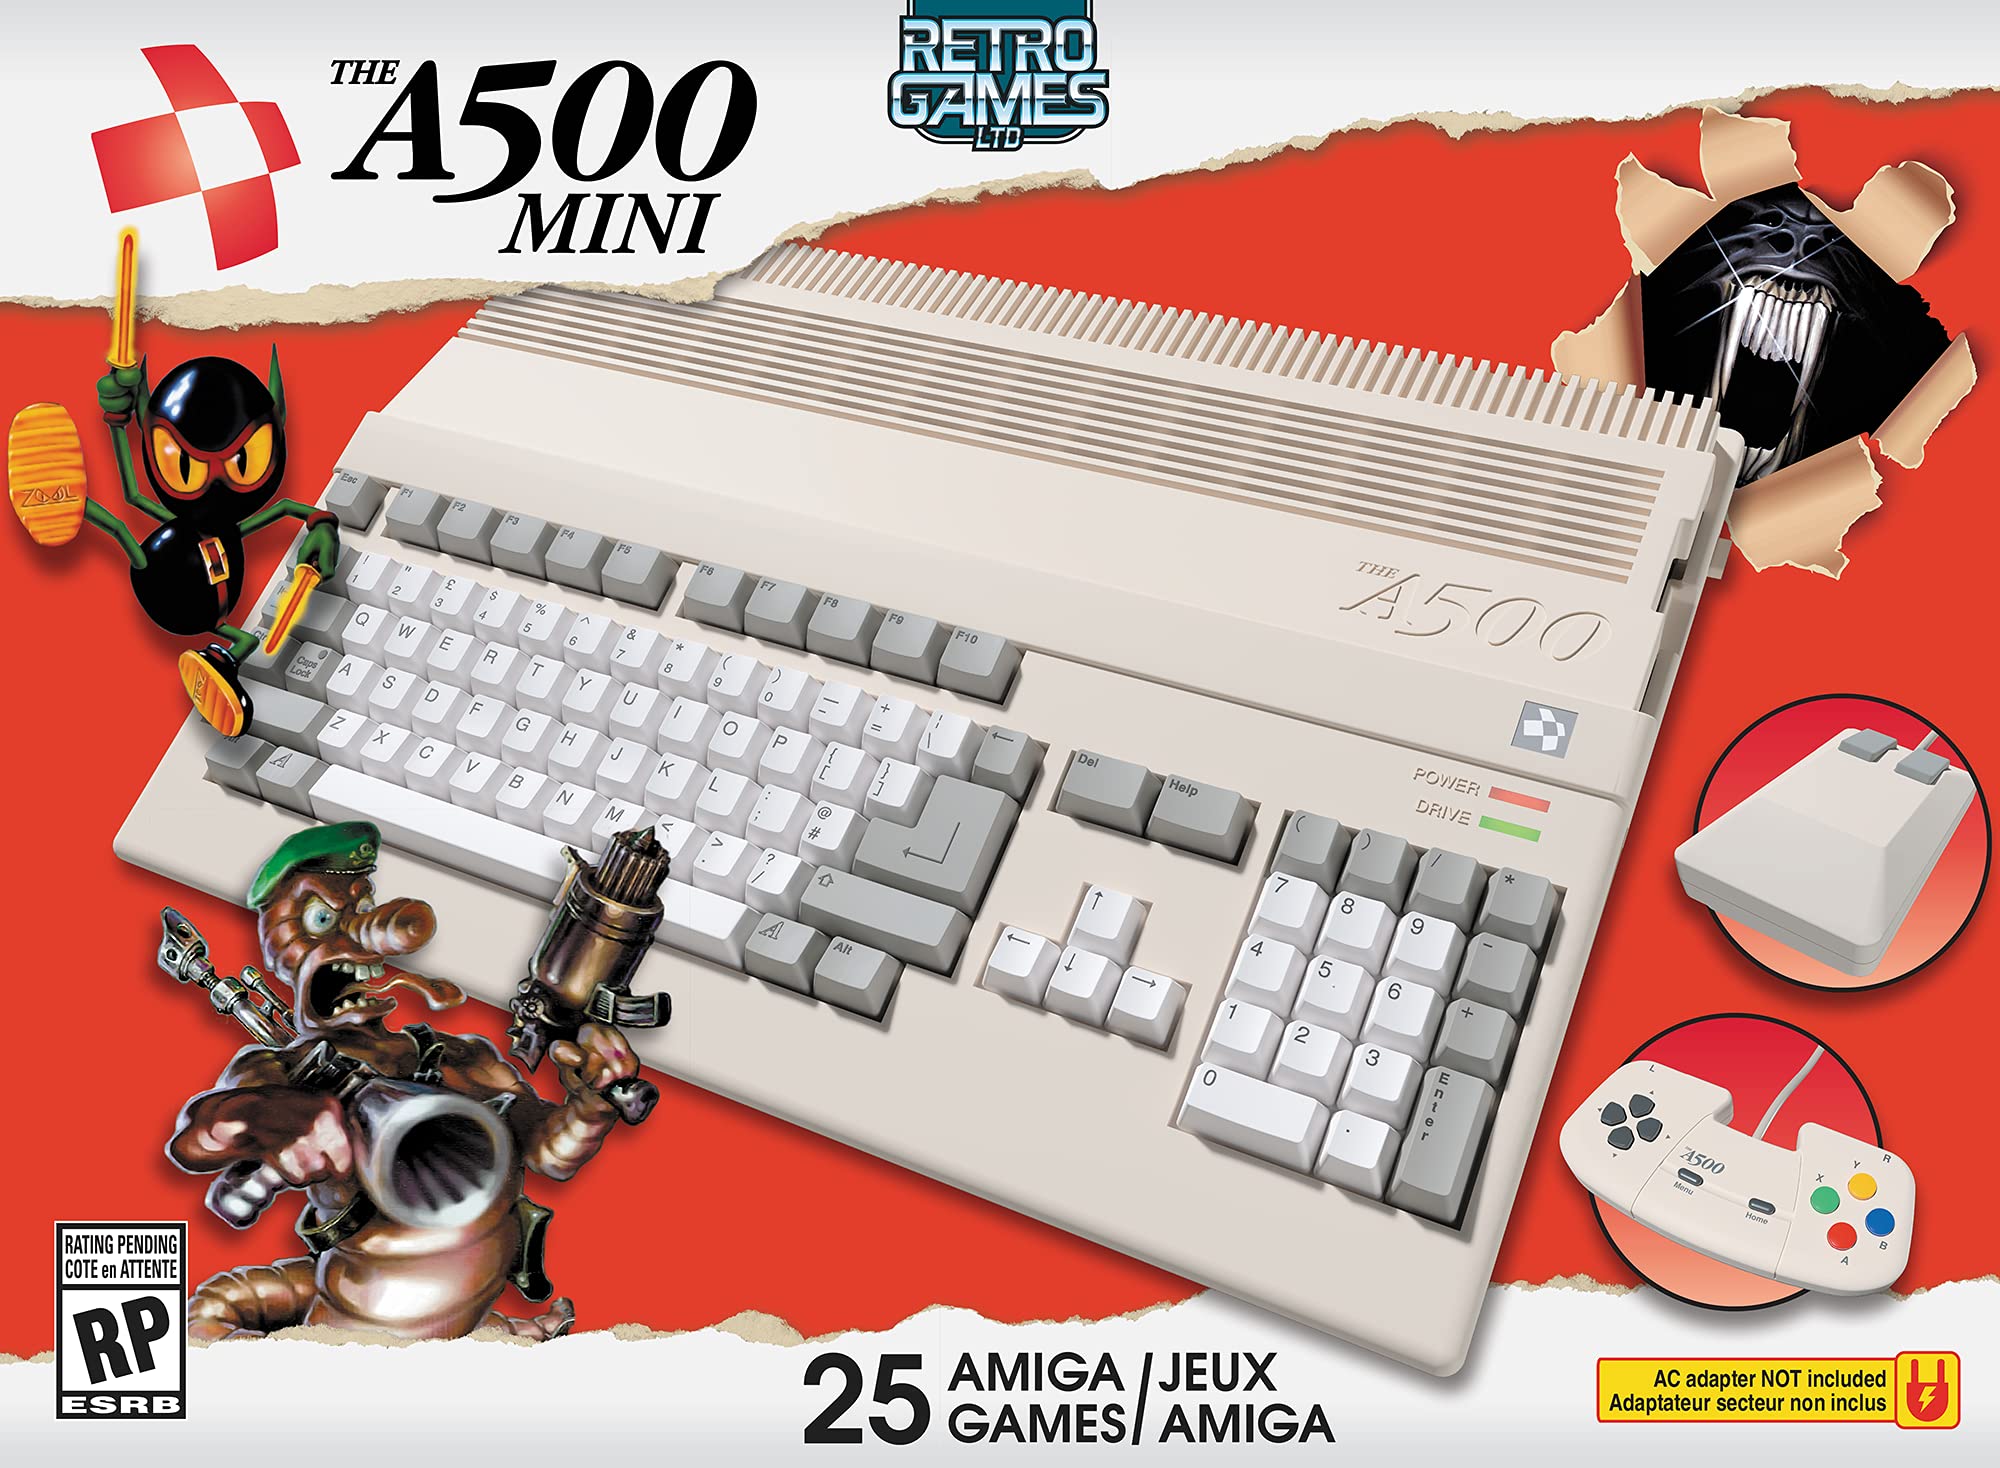 Retro Games A500 Mini Gaming Console w/ 25 Amiga Games $90